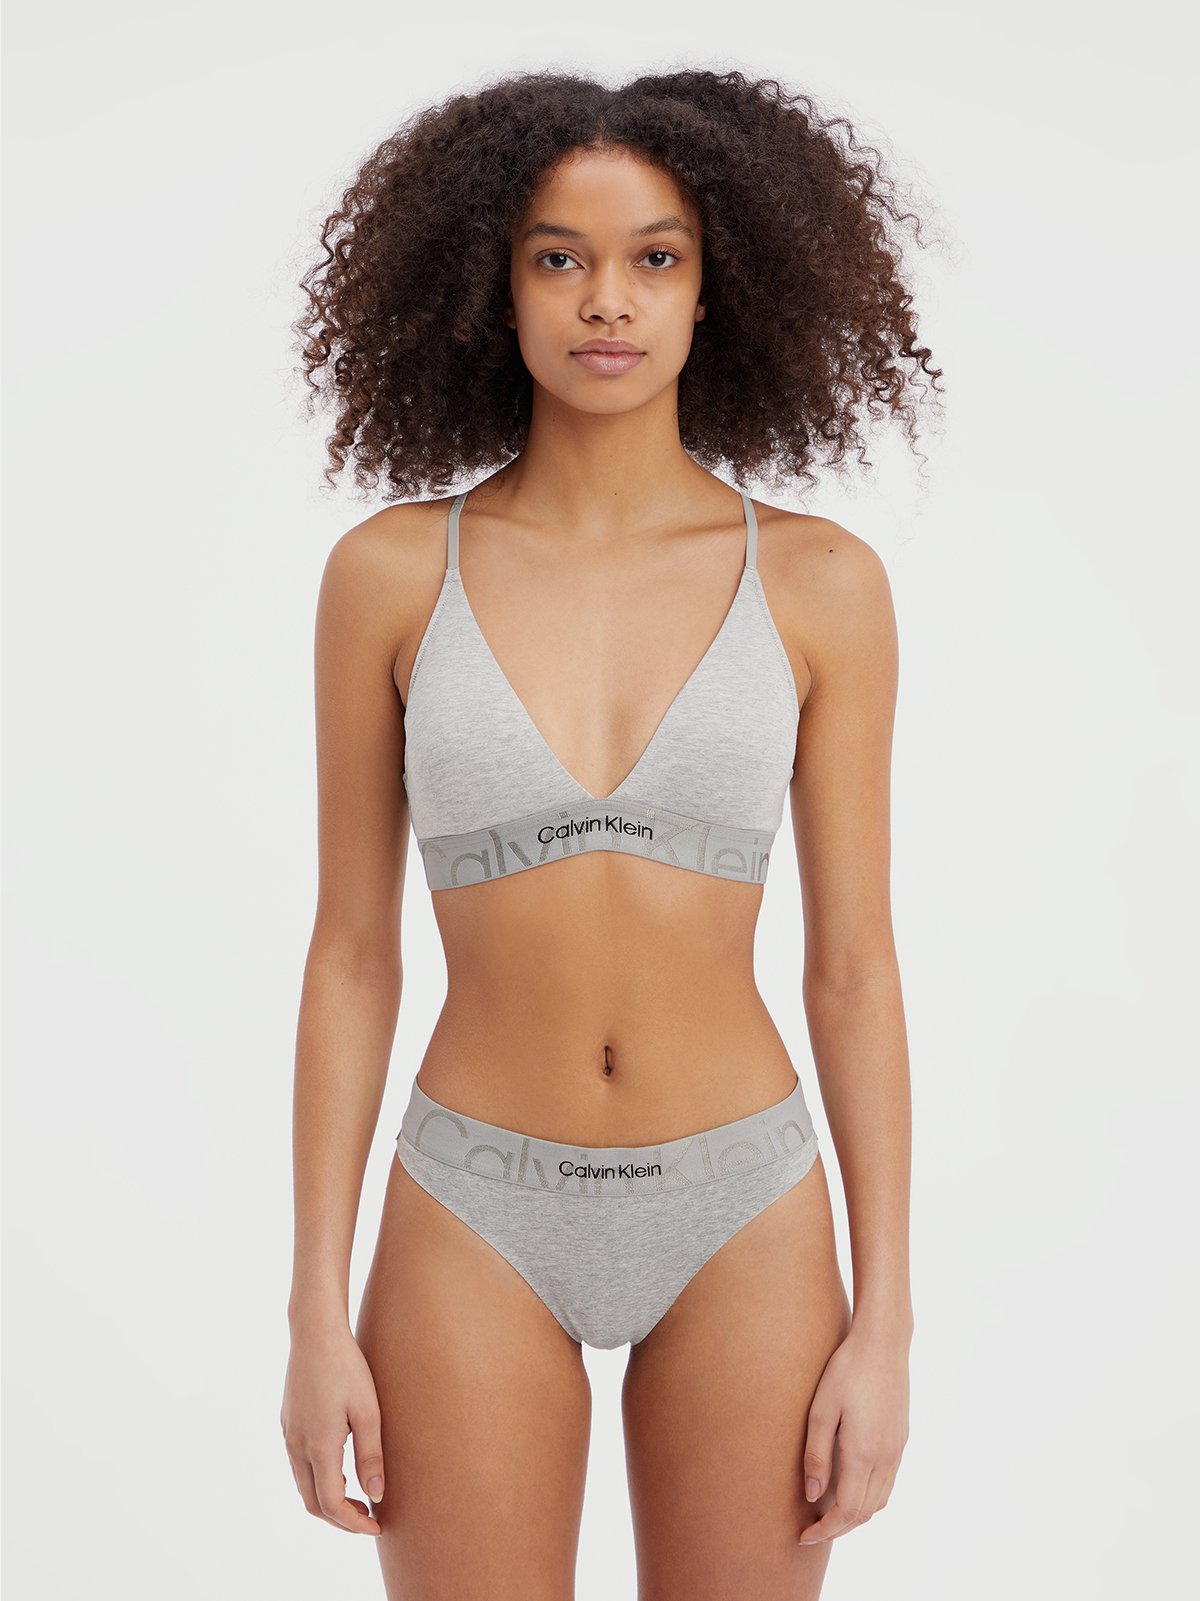 Calvin Klein Grey Underwear Set For Women : : Fashion